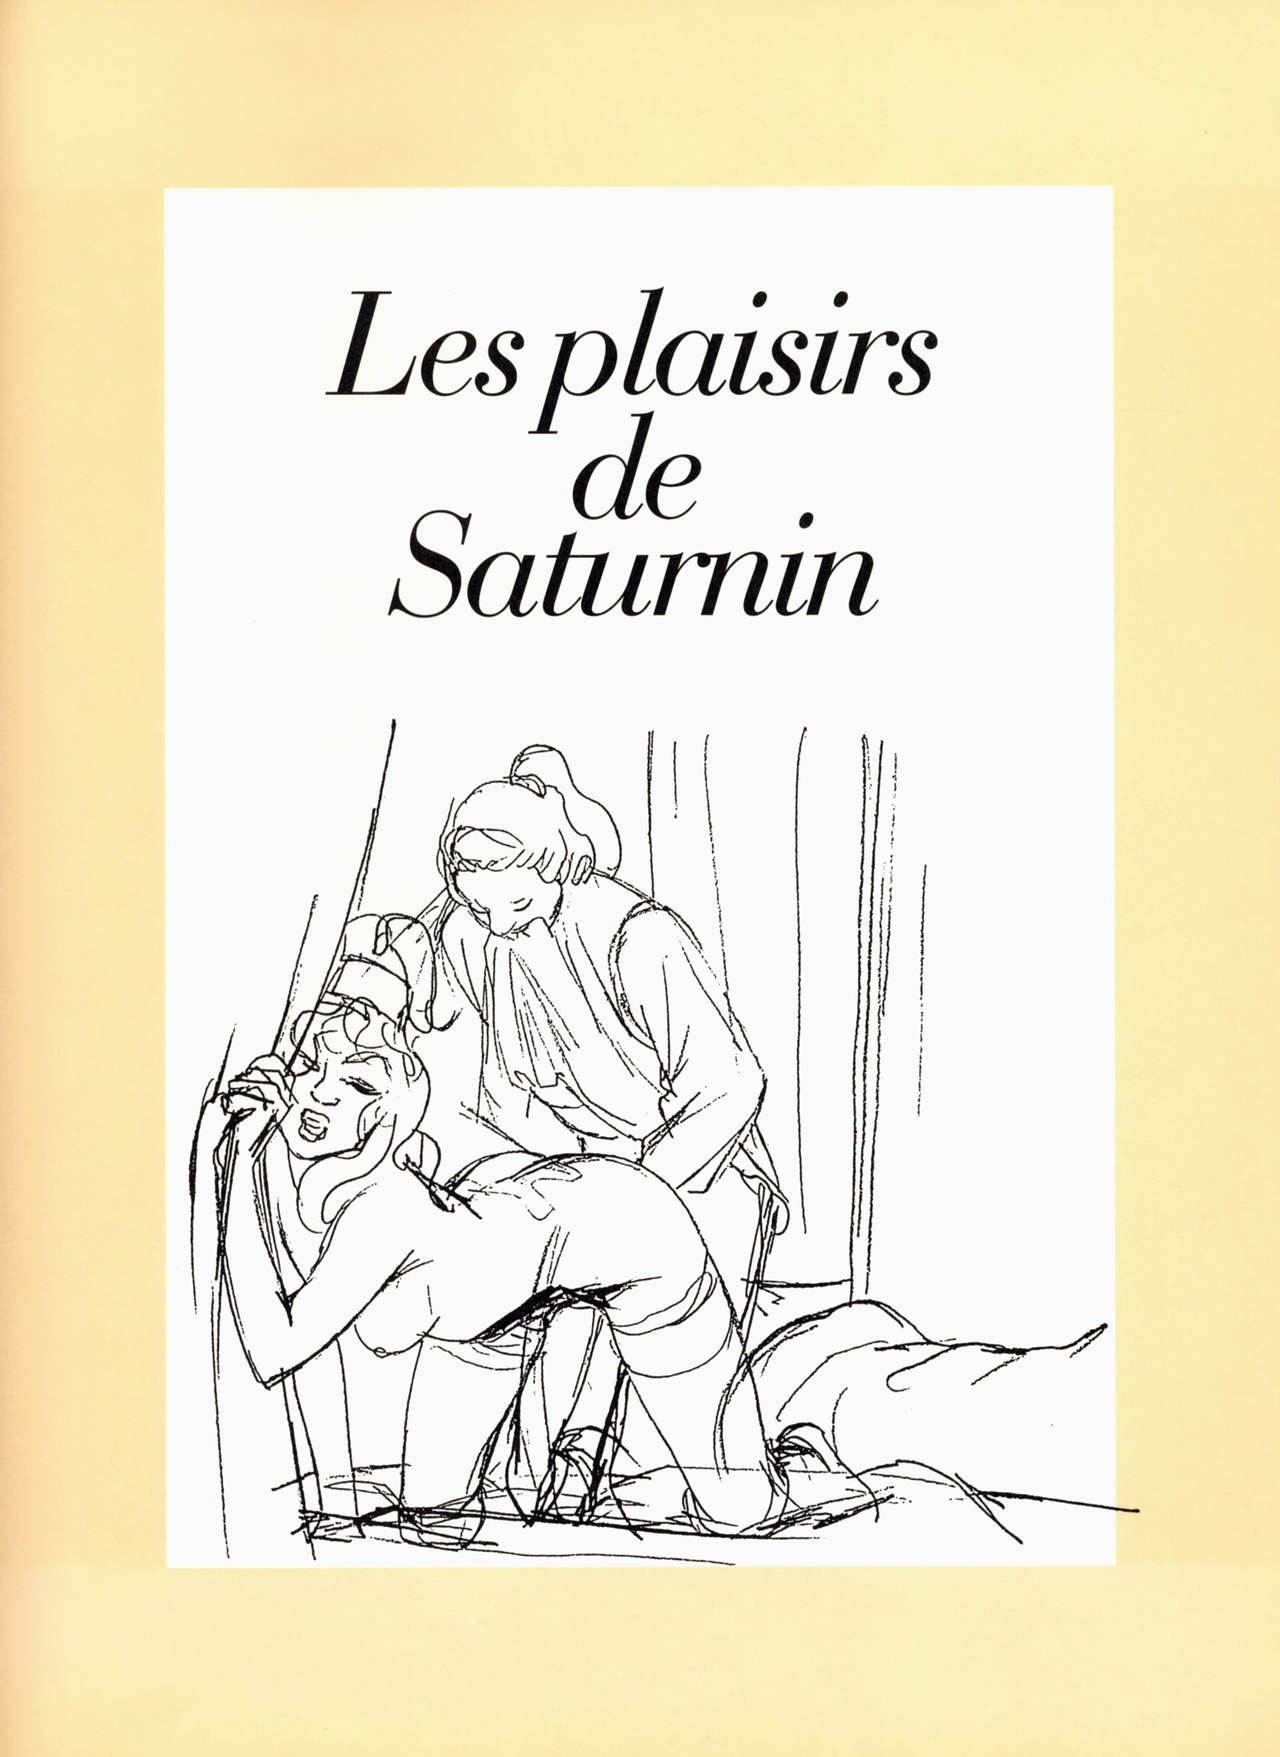 Les plaisirs de Saturnin ou Lenfer interdit numero d'image 50